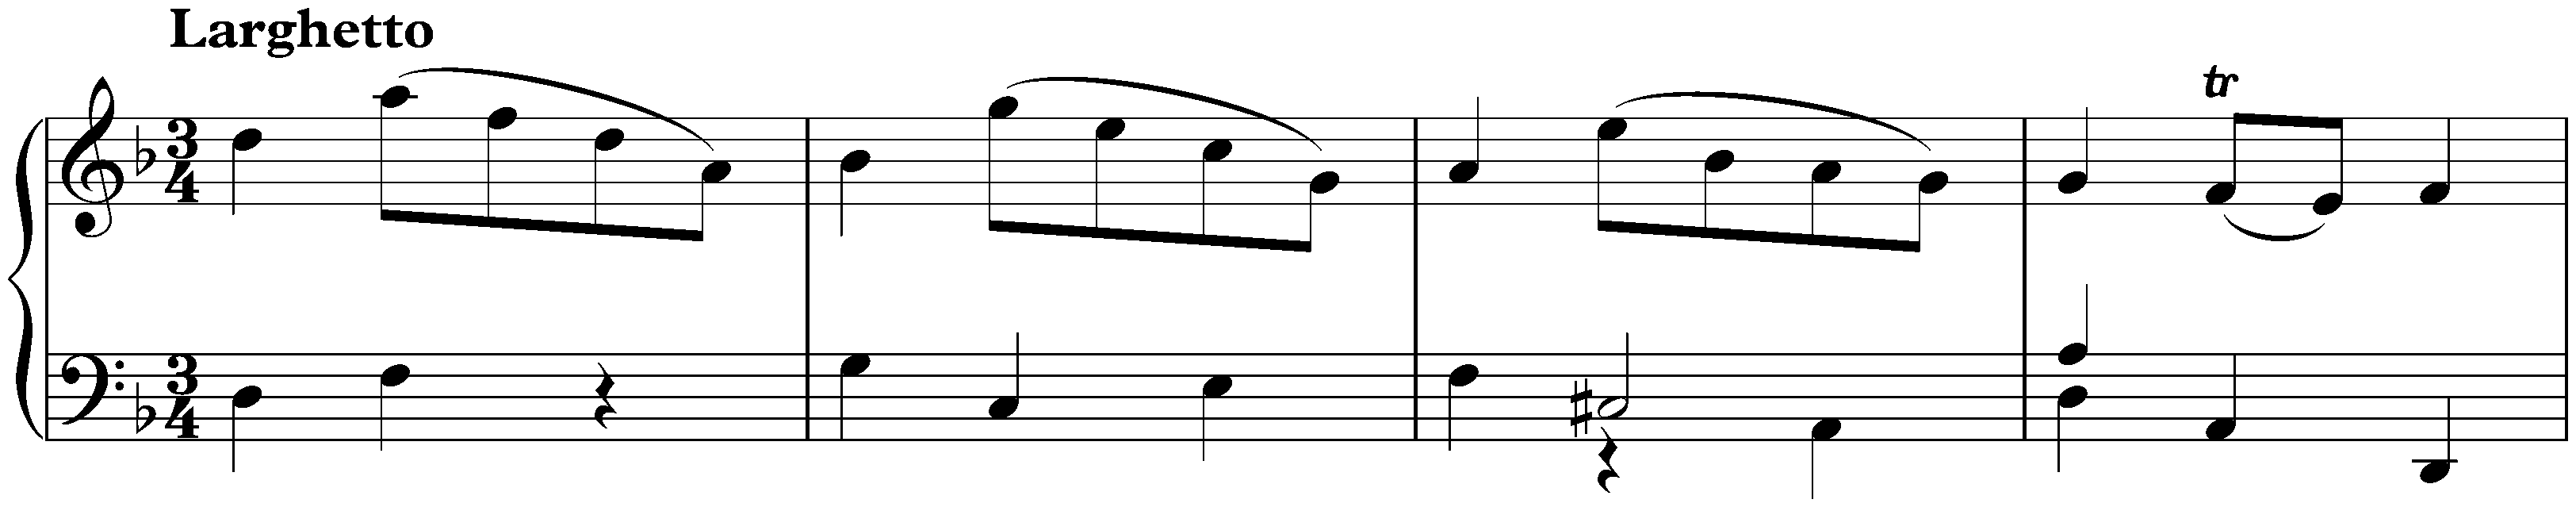 Sonata in D minor, K. 34